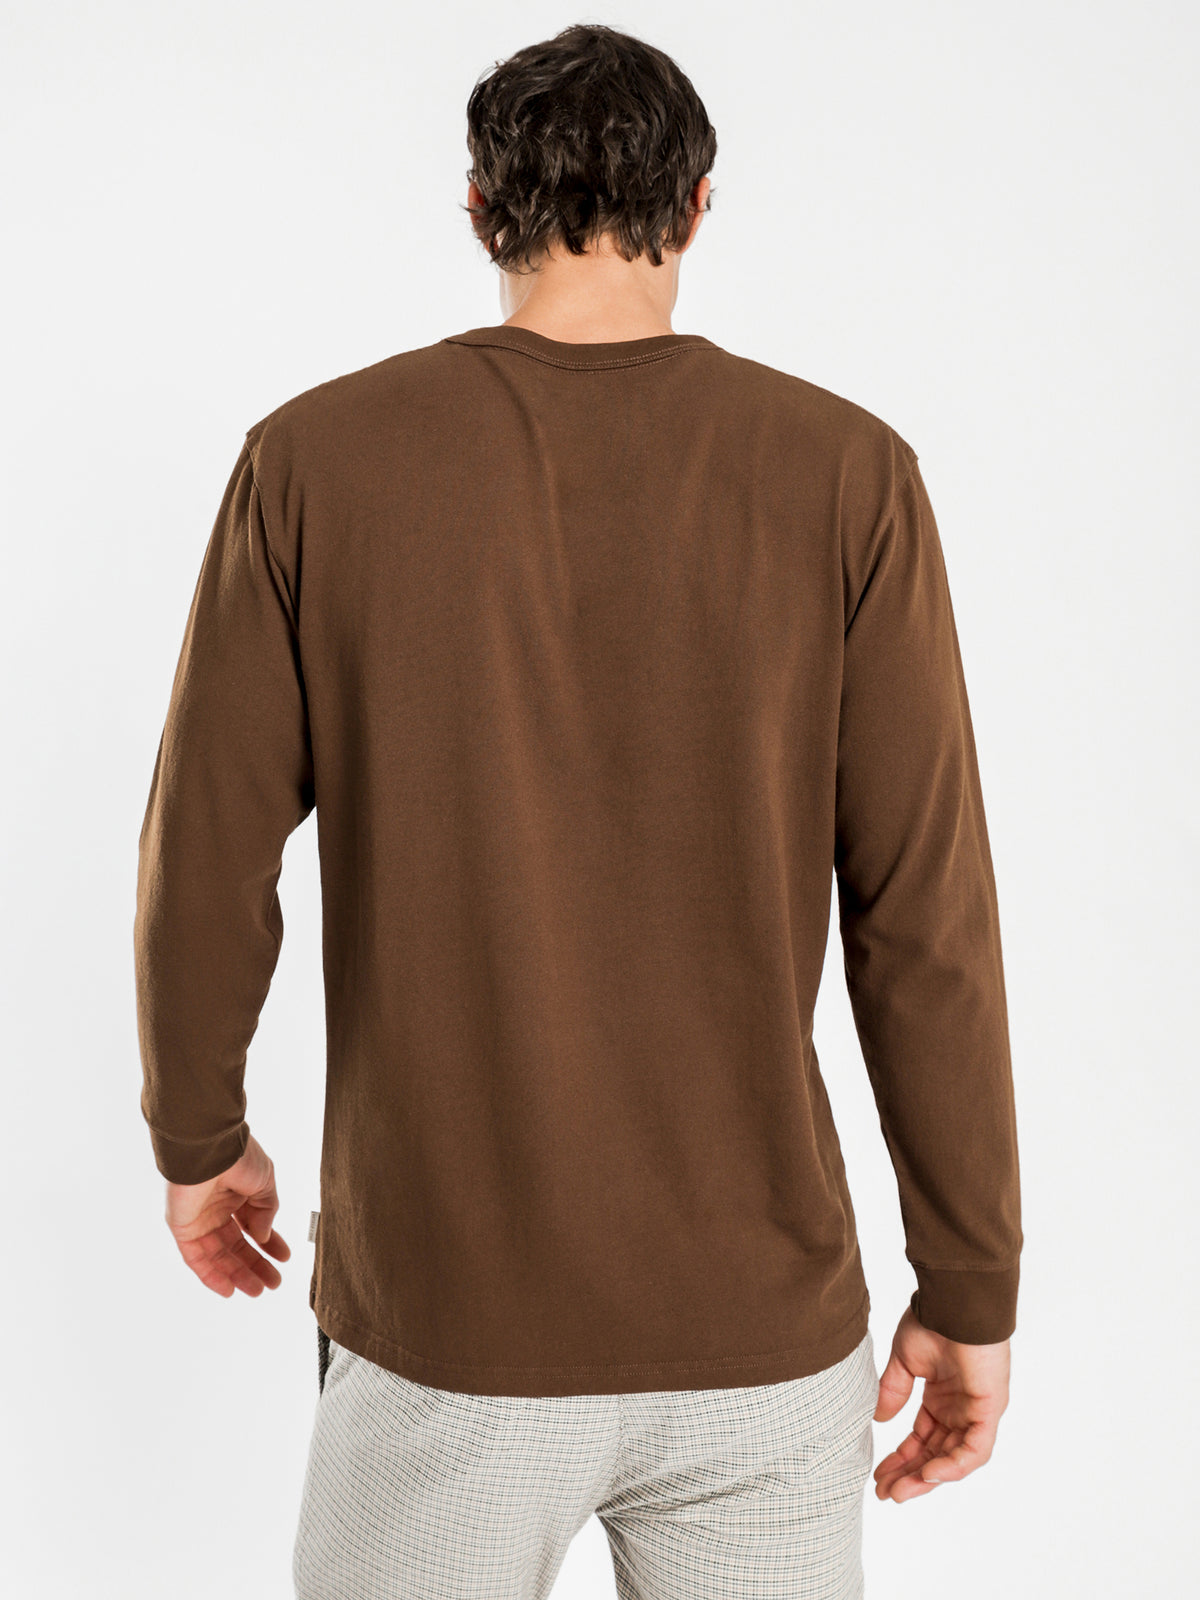 Heavyweight Long Sleeve T-Shirt in Mahogany